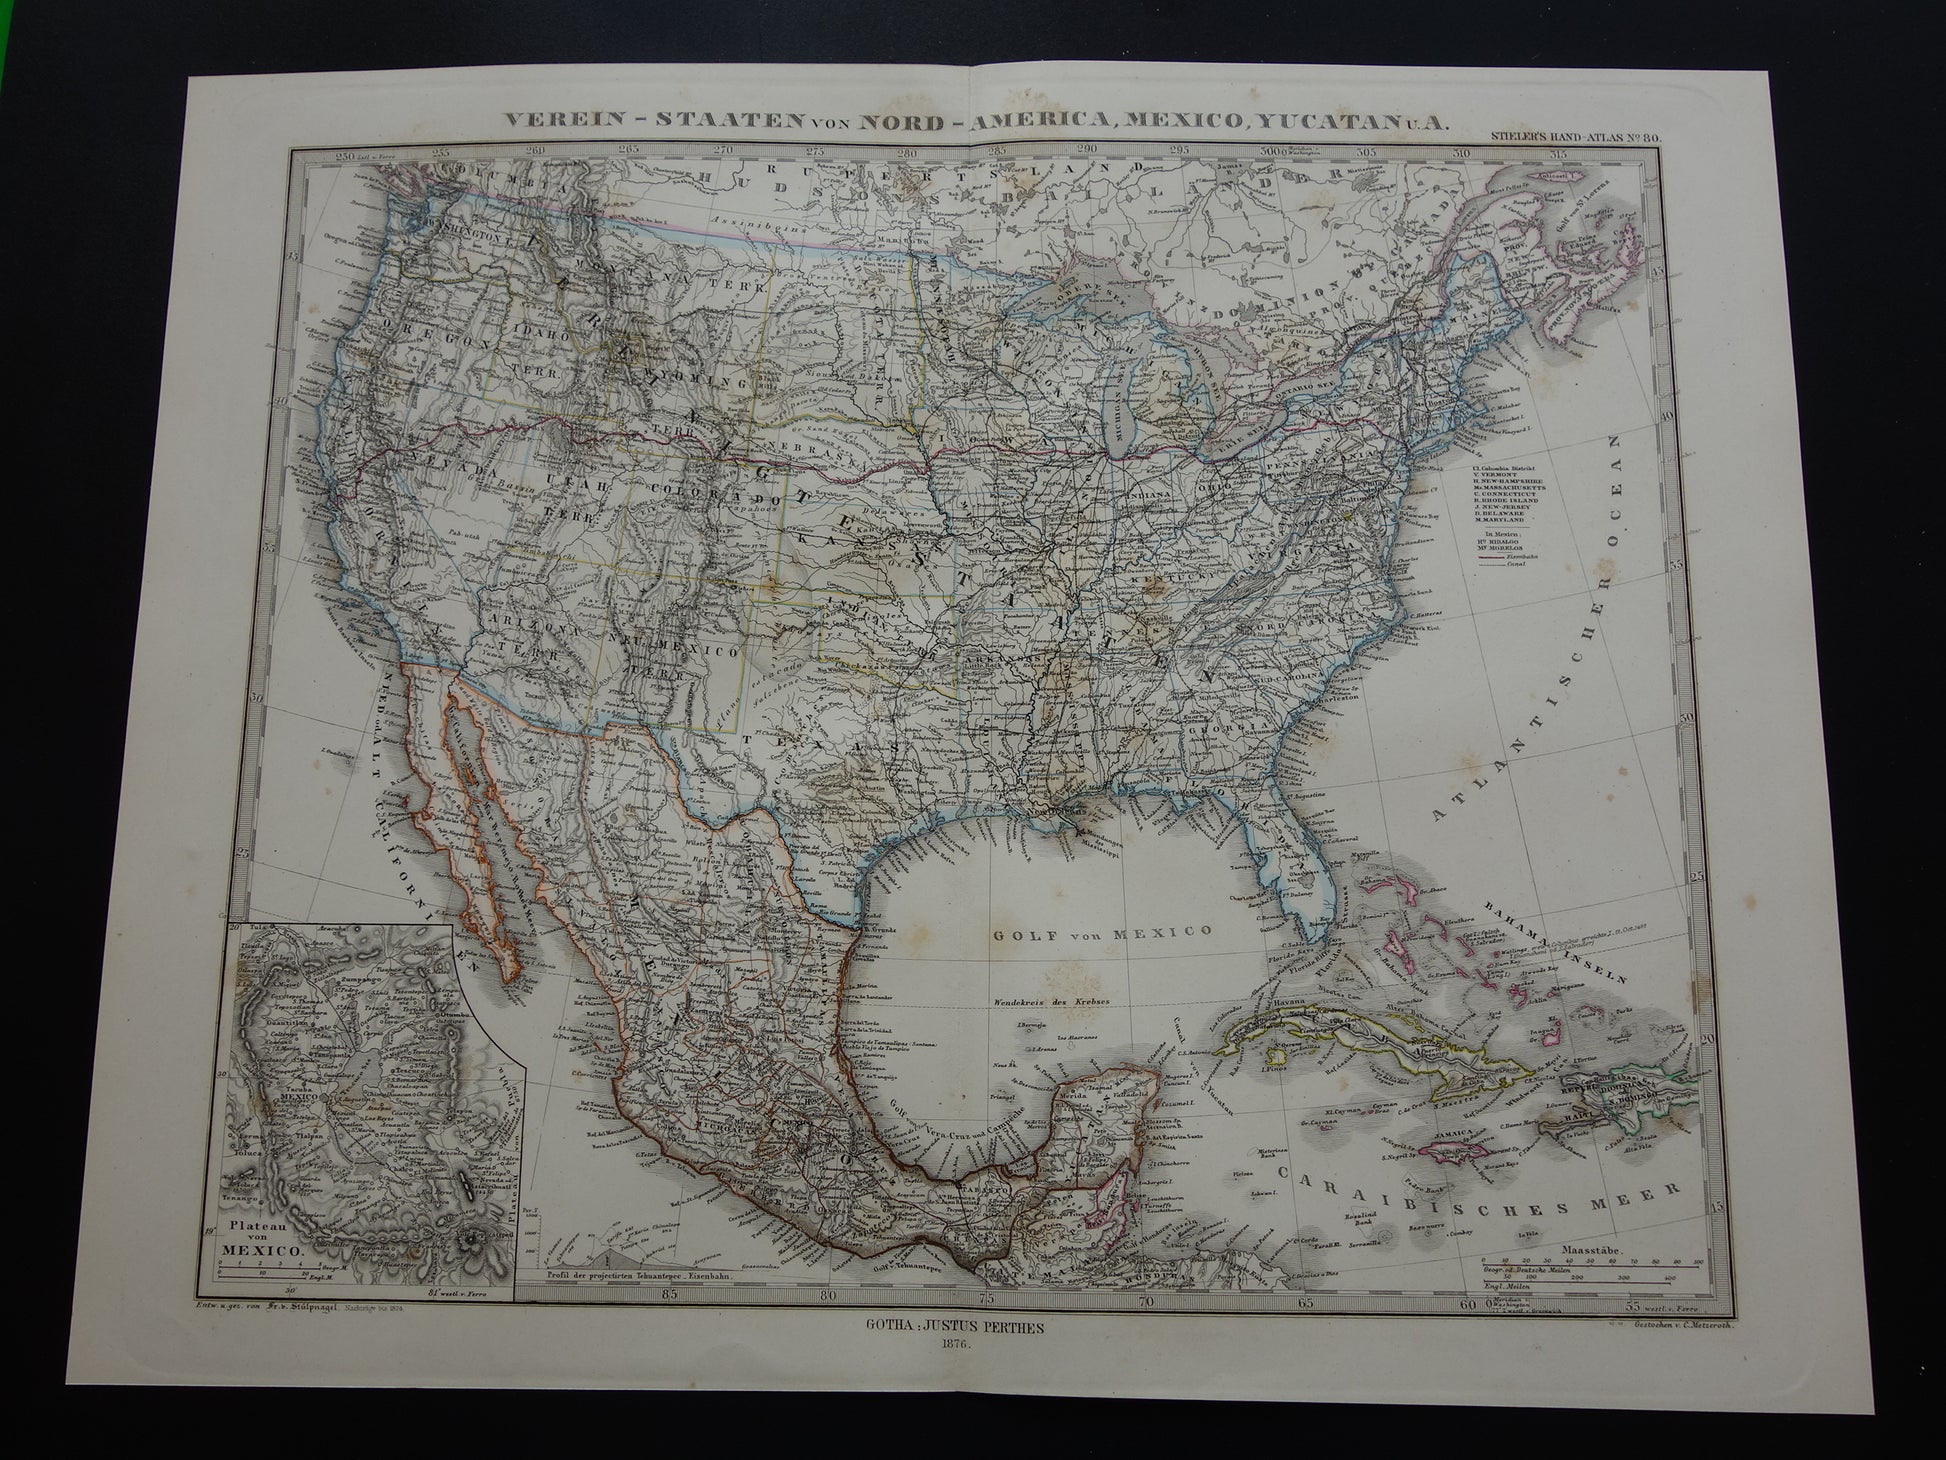 VERENIGDE STATEN oude kaart van de VS in 1876 antieke landkaart van Amerika USA originele vintage historische kaarten